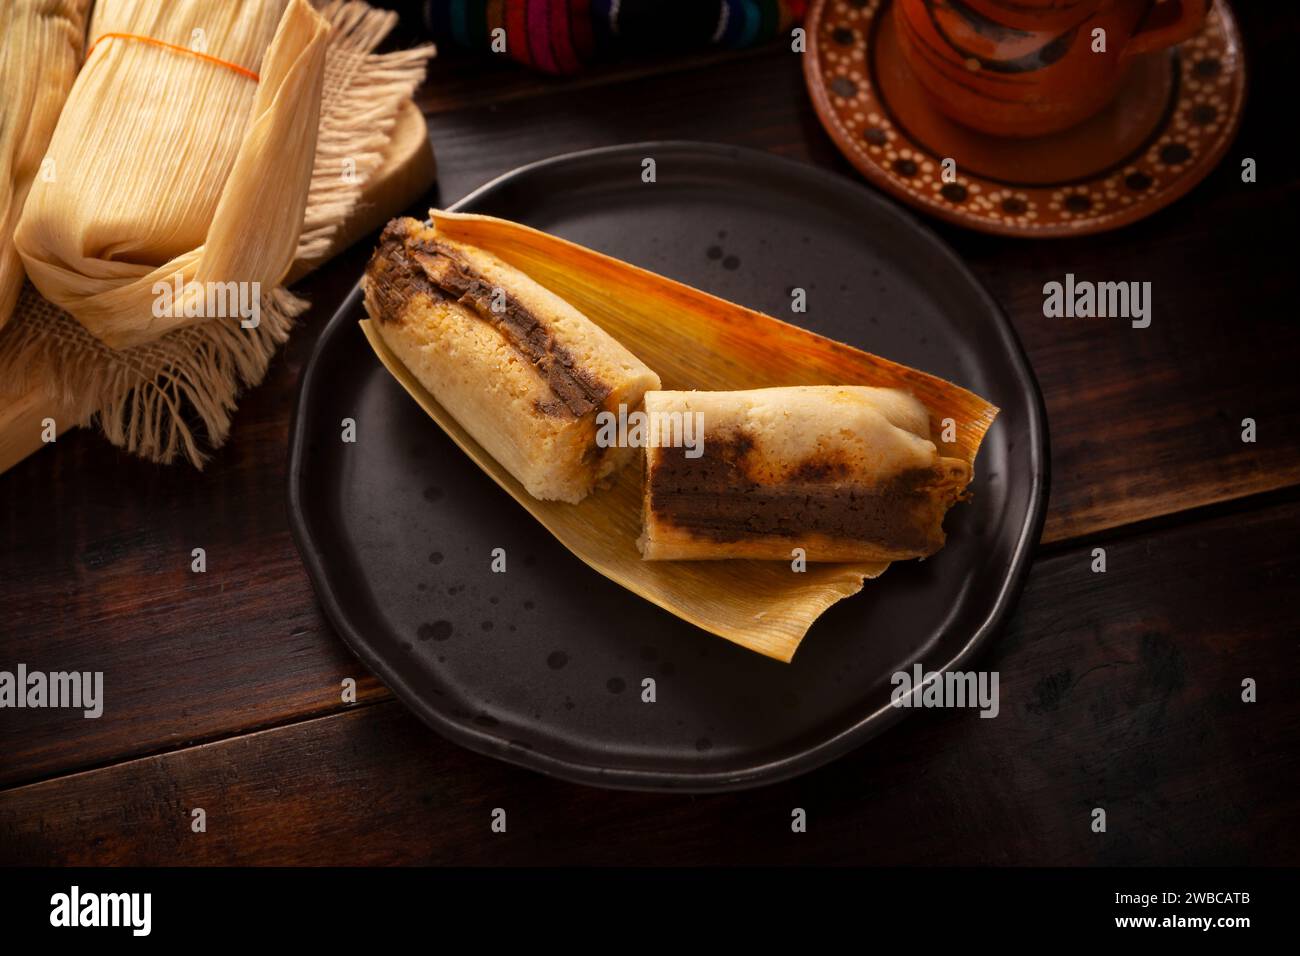 Tamales. Plat hispanique typique du Mexique et de certains pays d'Amérique latine. Pâte de maïs enveloppée dans des feuilles de maïs. Les tamales sont cuits à la vapeur. Banque D'Images